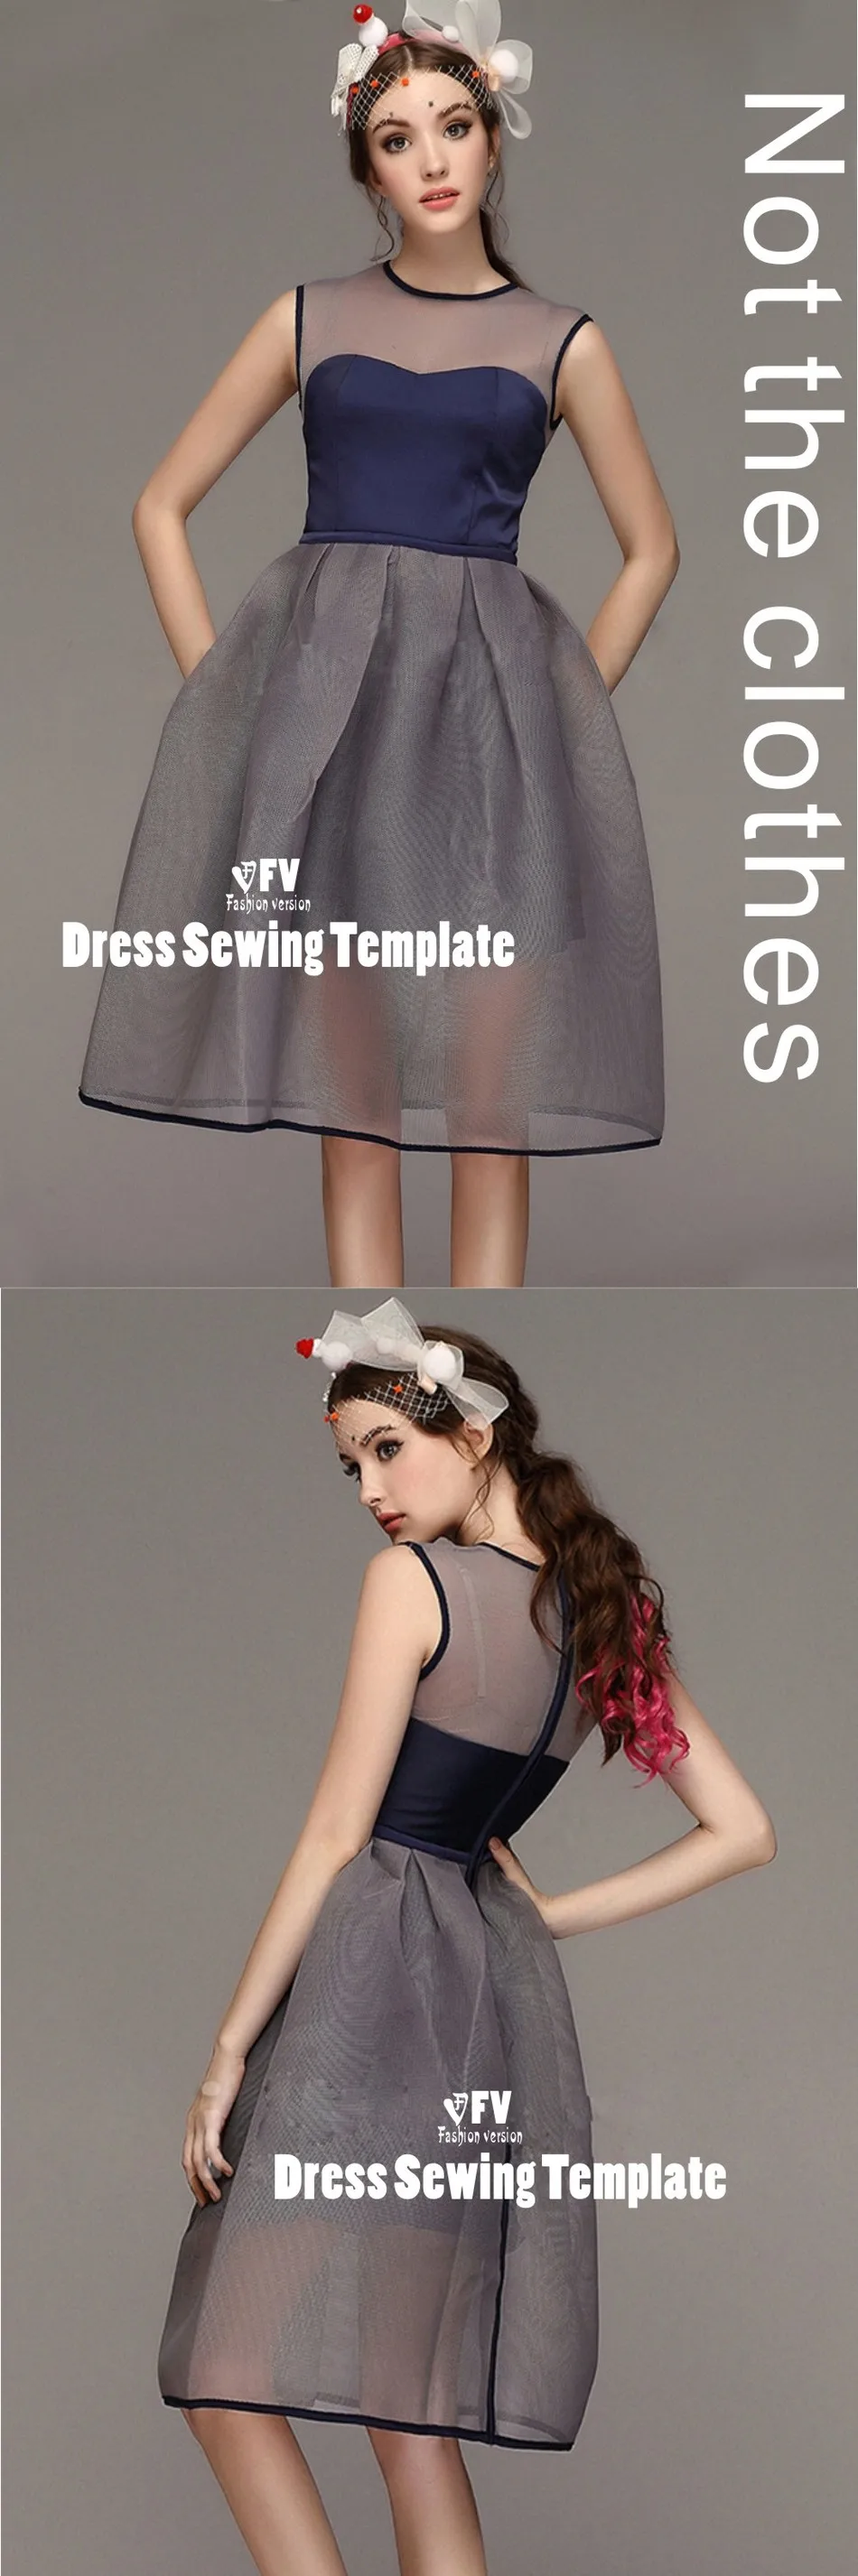 Платья Швейные шаблон резки одежды для рисования DIY(не продавая одежду) BLQ-219